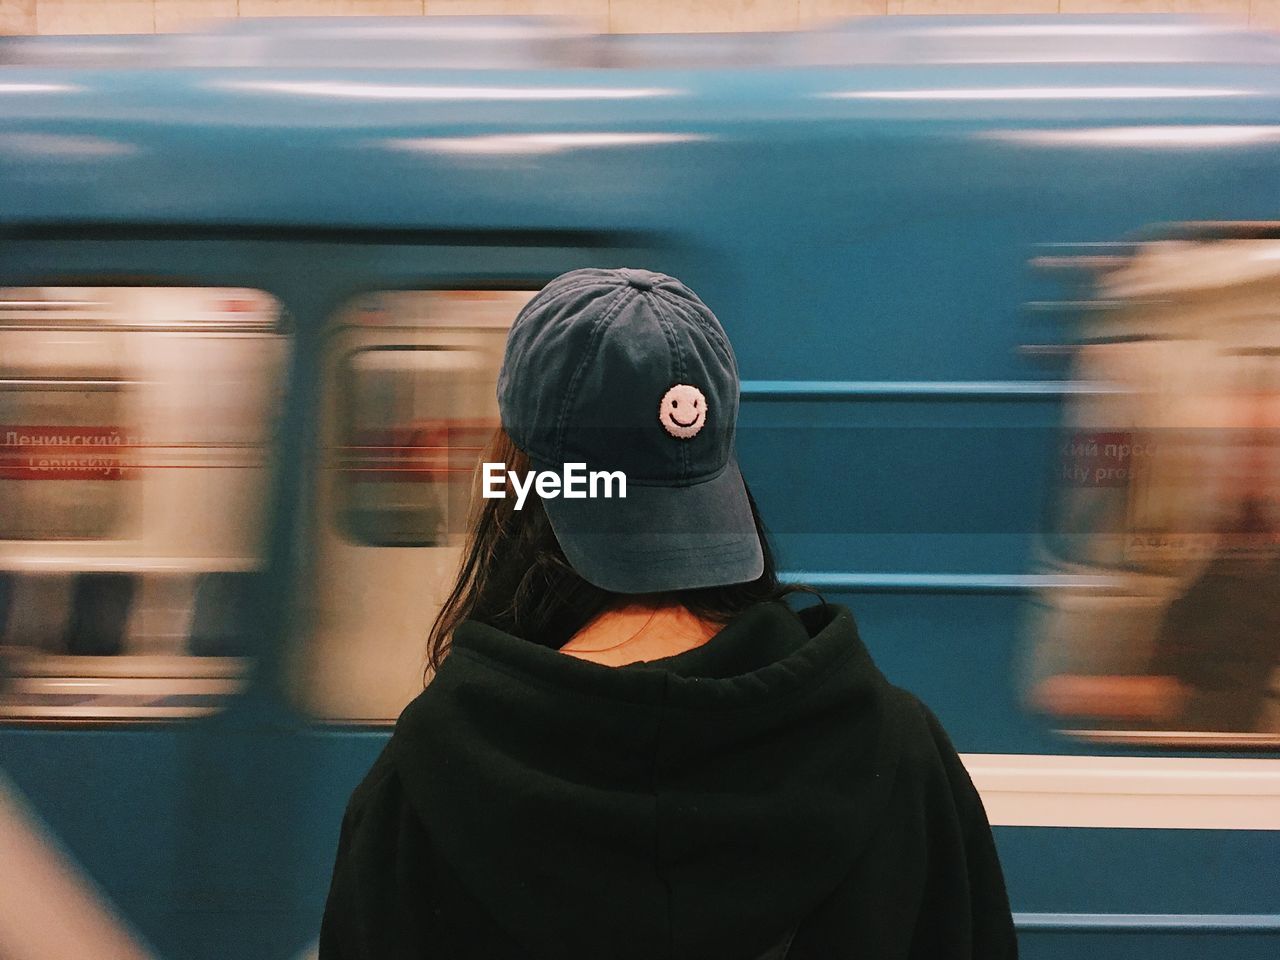 Girl in a metro 